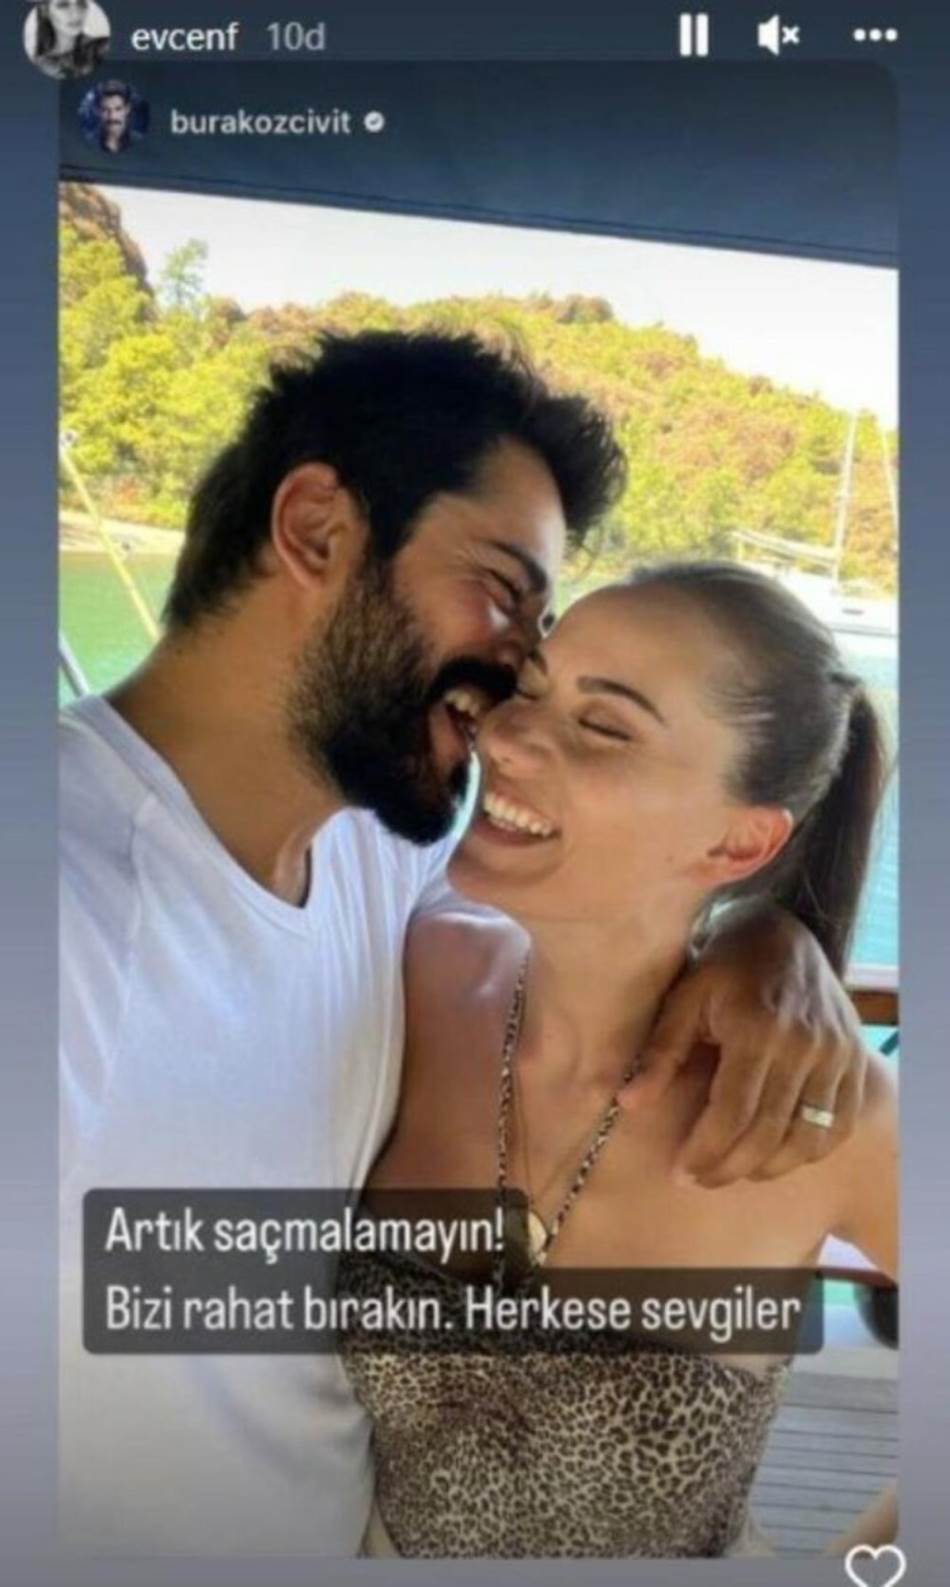 Burak Ozcivit i Fahriye Evcen su u braku od 2017. godine